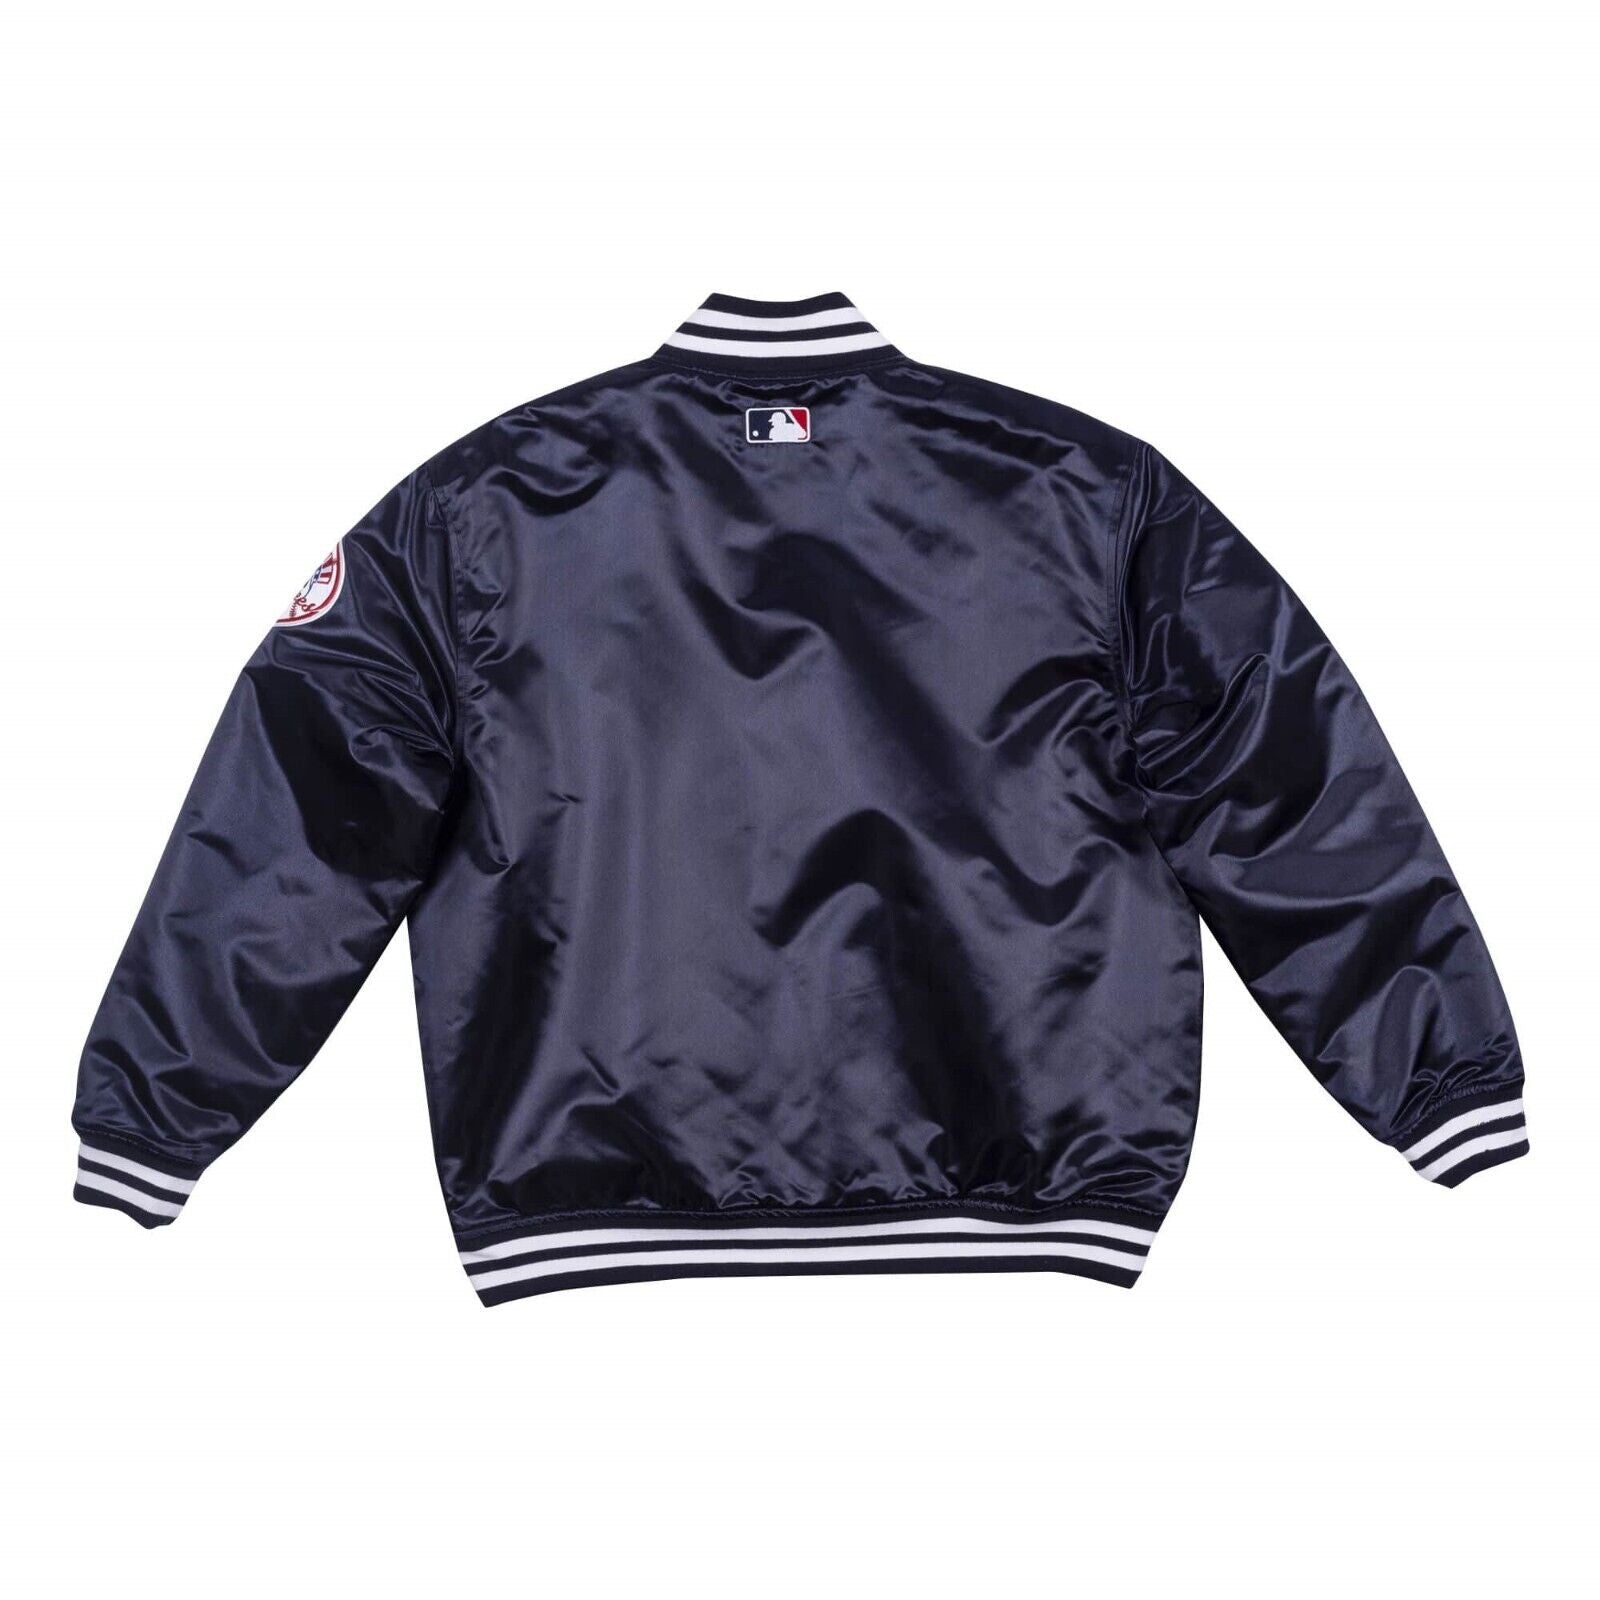 NY Yankees Vintage 90s Athletic Jacket Blue Satin Bomber Style Varsity Jacket